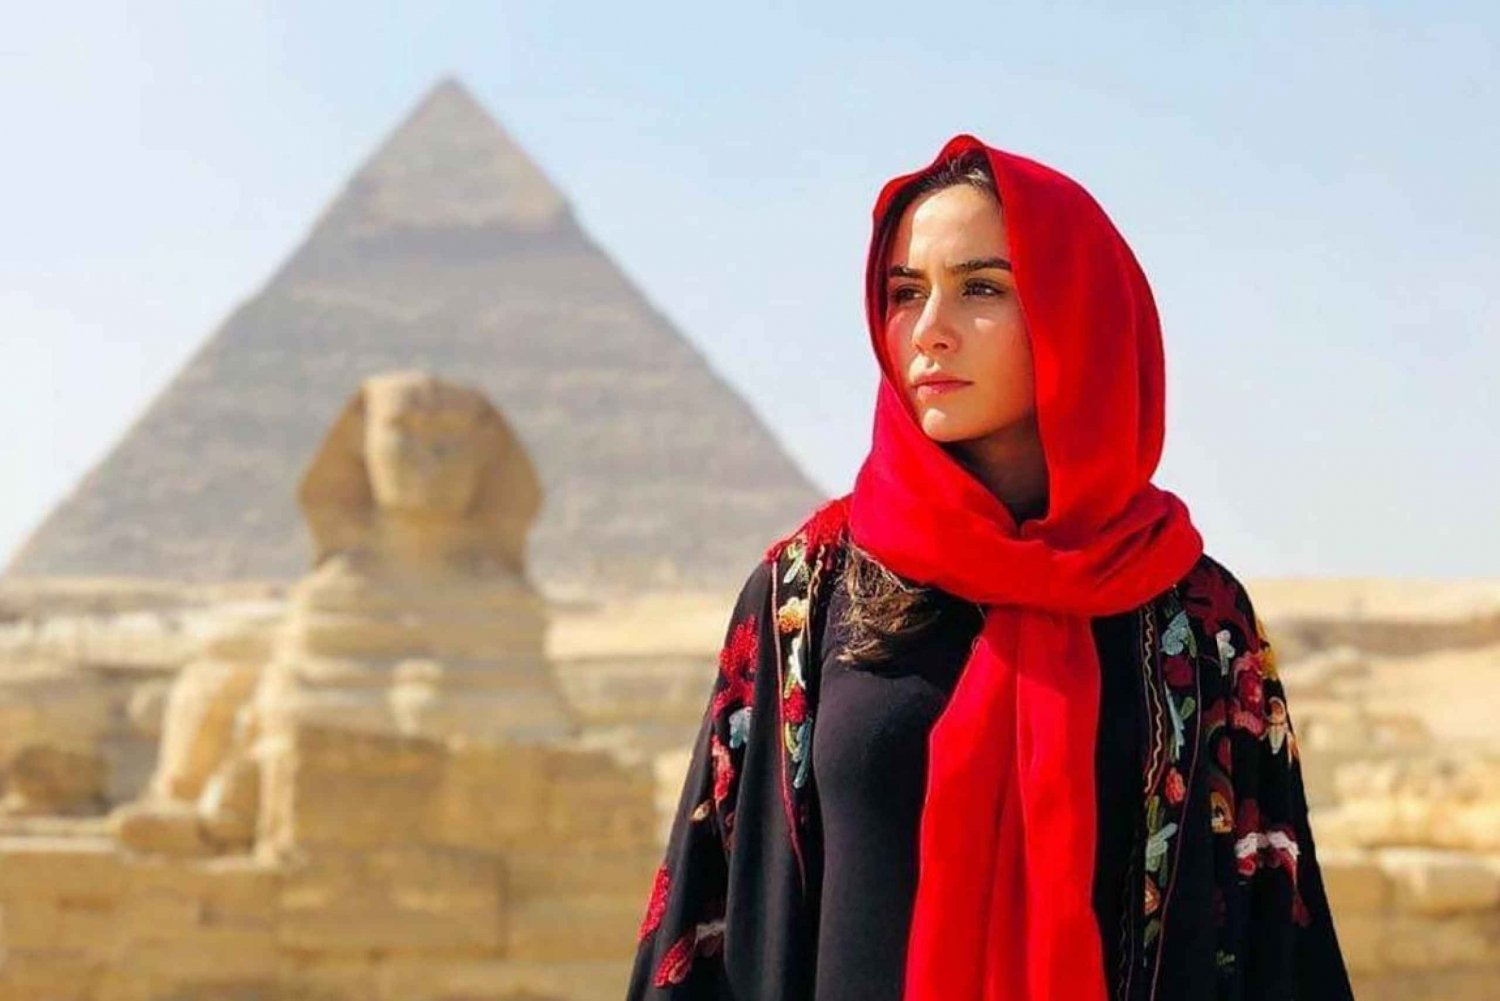 Cairo: Pirâmides, visita a museus e cruzeiro com jantar